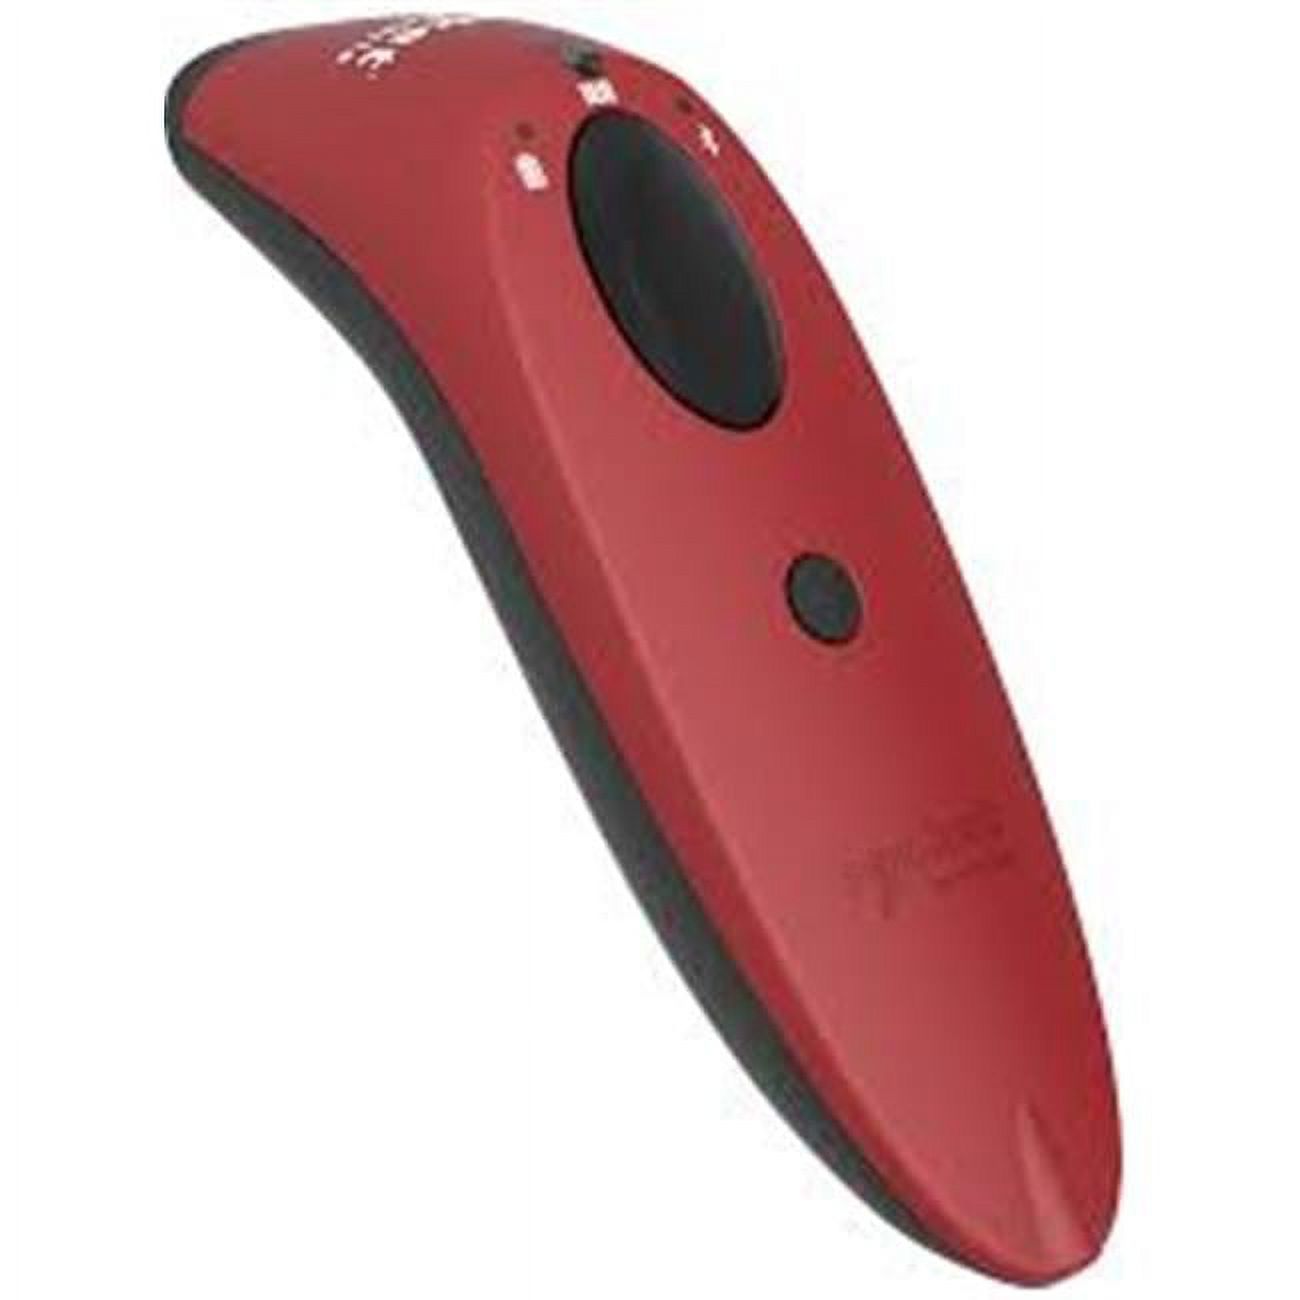 Socket Mobile CX3400-1858 S730 1D Laser Barcode Scanner&#44; Red - image 1 of 3